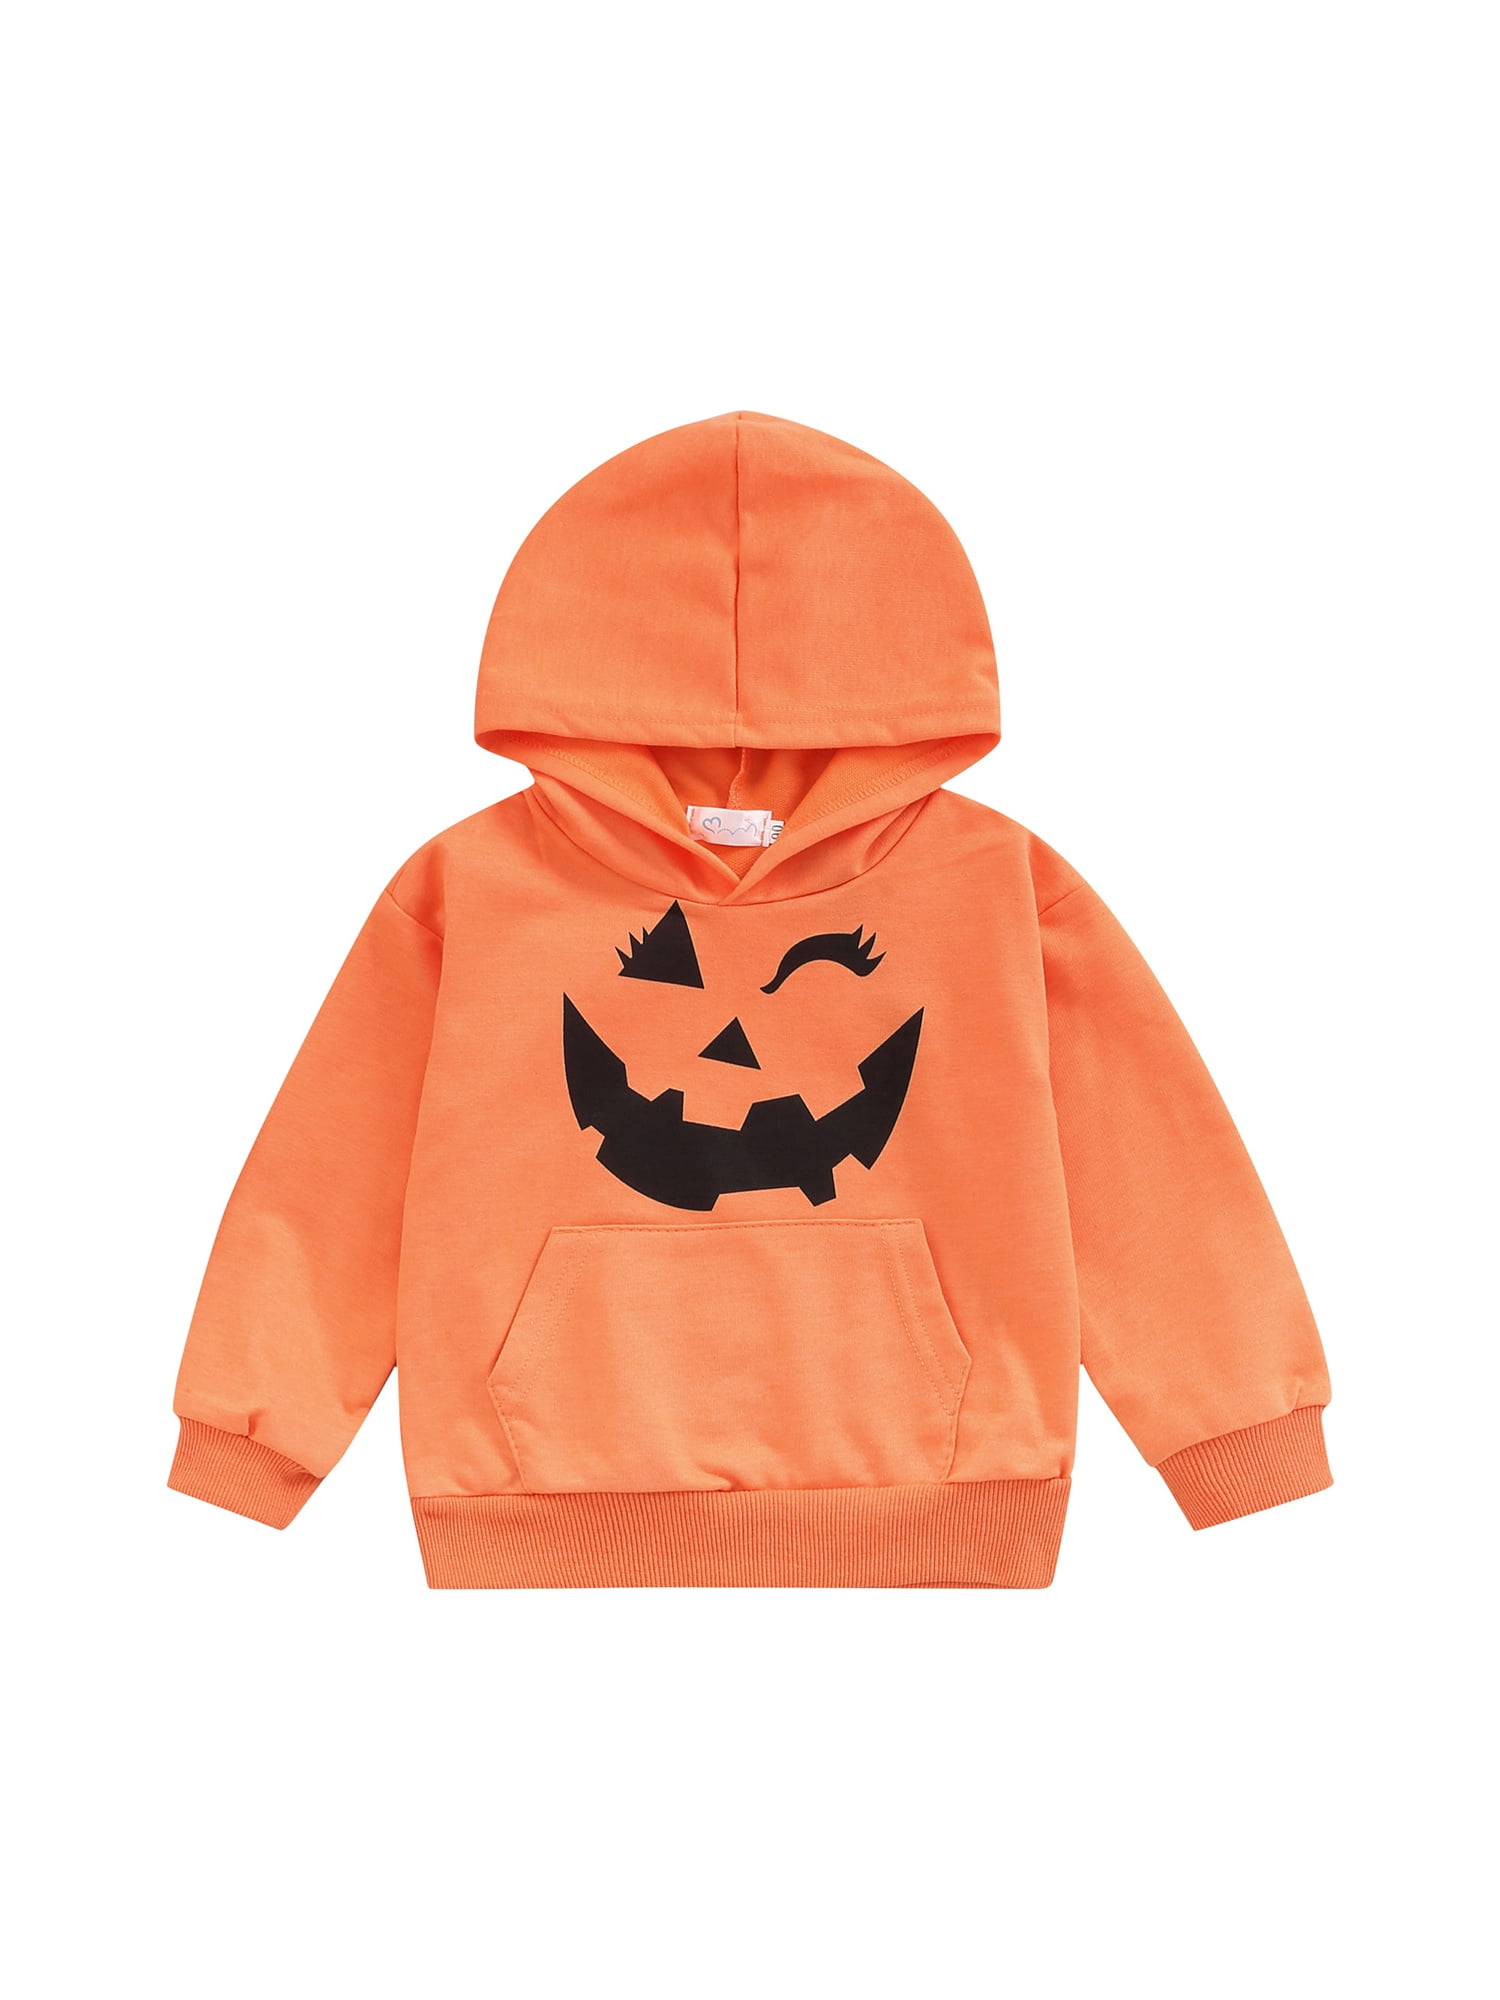 Personalised Disney Halloween Clothing Unisex Kids Clothing Hoodies & Sweatshirts Hoodies His and Hers 